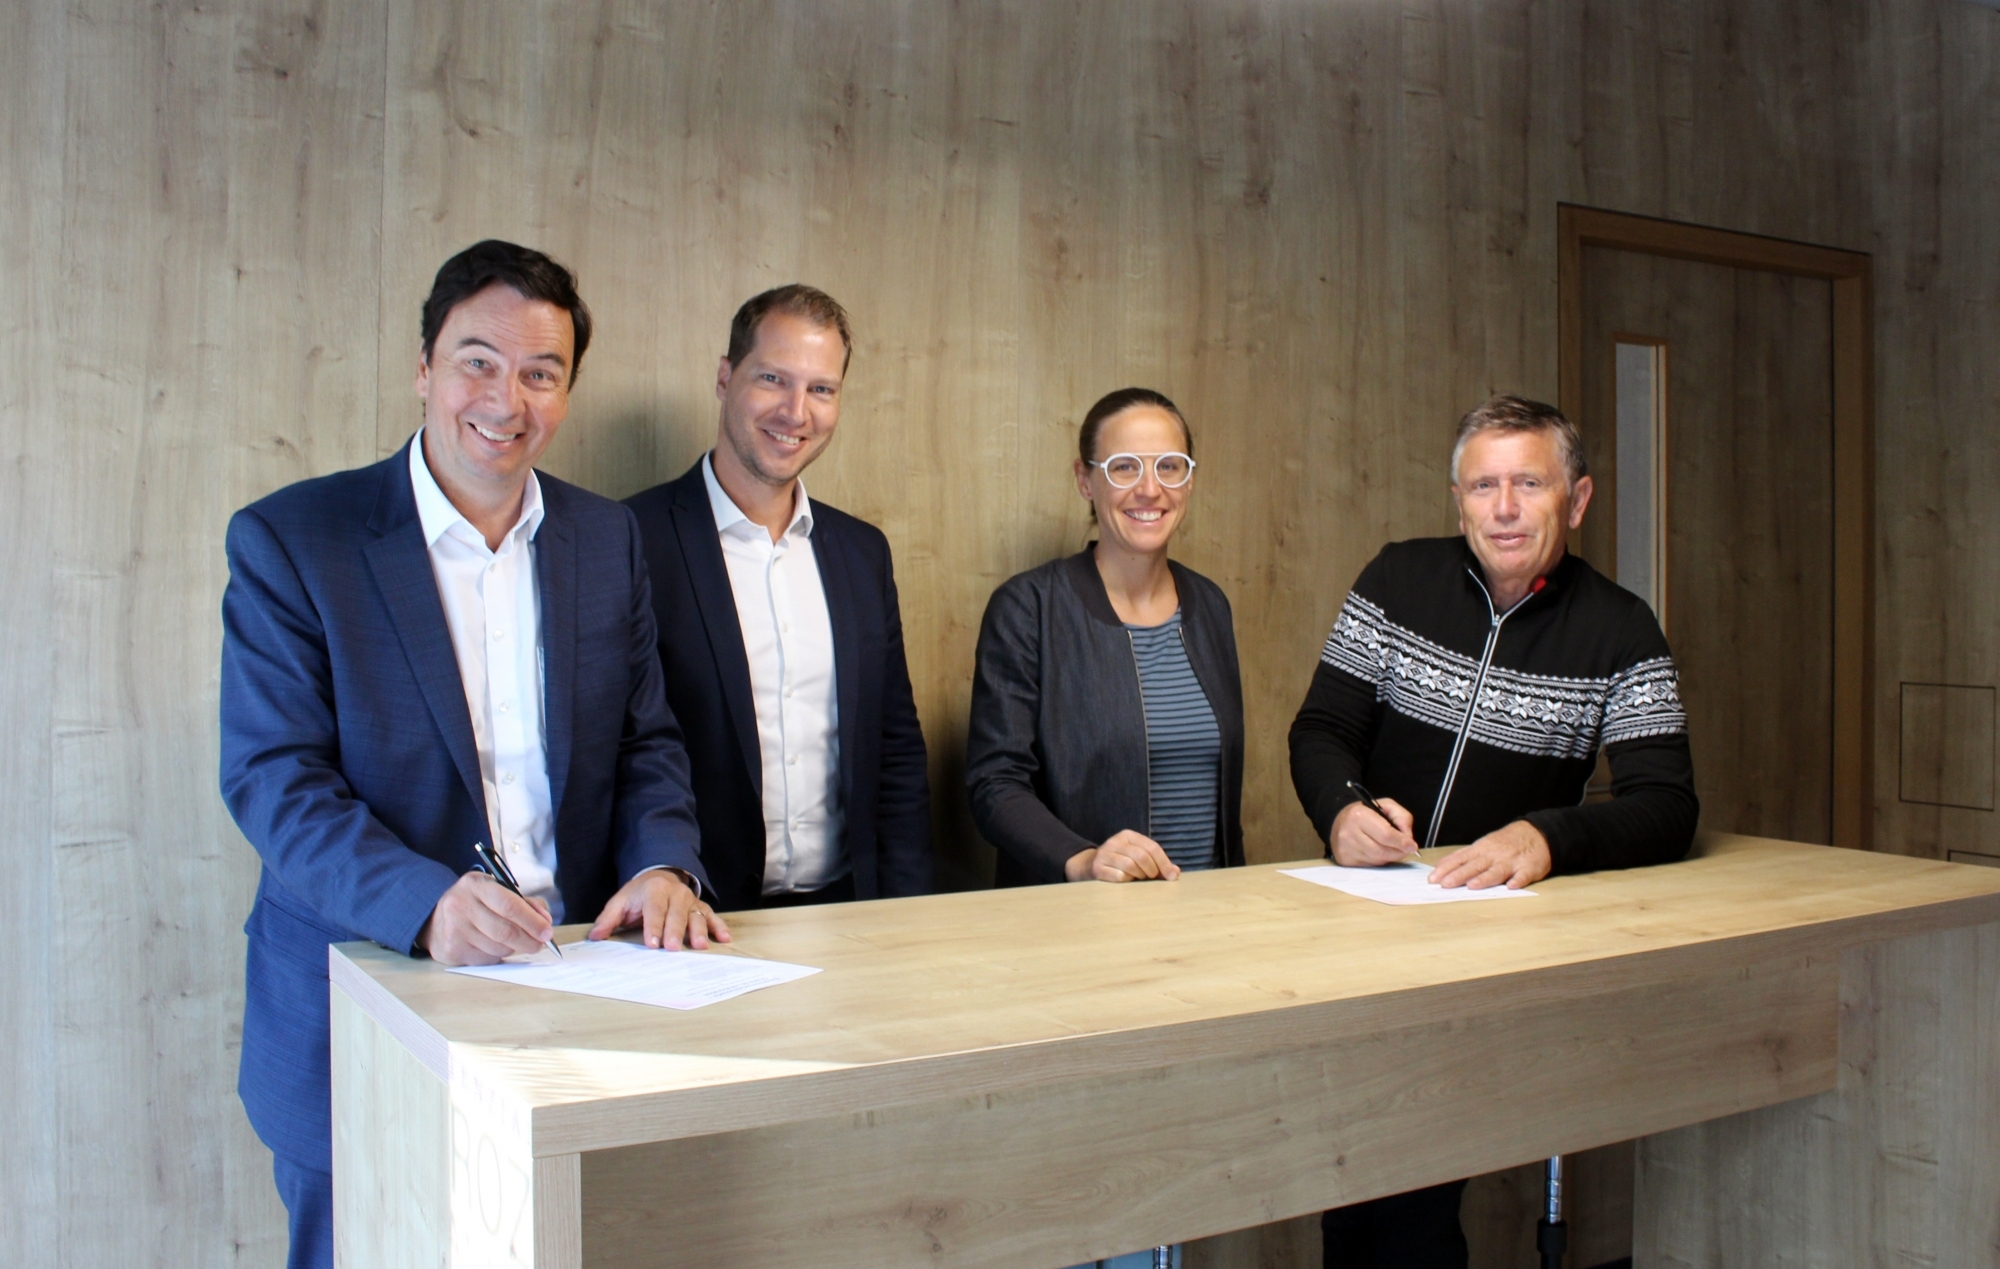 Signature de la Charte ARVr-RWO: de gauche à droite, Philippe Varone (président ARVr),  Grégory Carron (directeur, ARVr), Tamar Hosennen (directrice générale RWO AG), Richard Kalbermatter (président RWO AG).